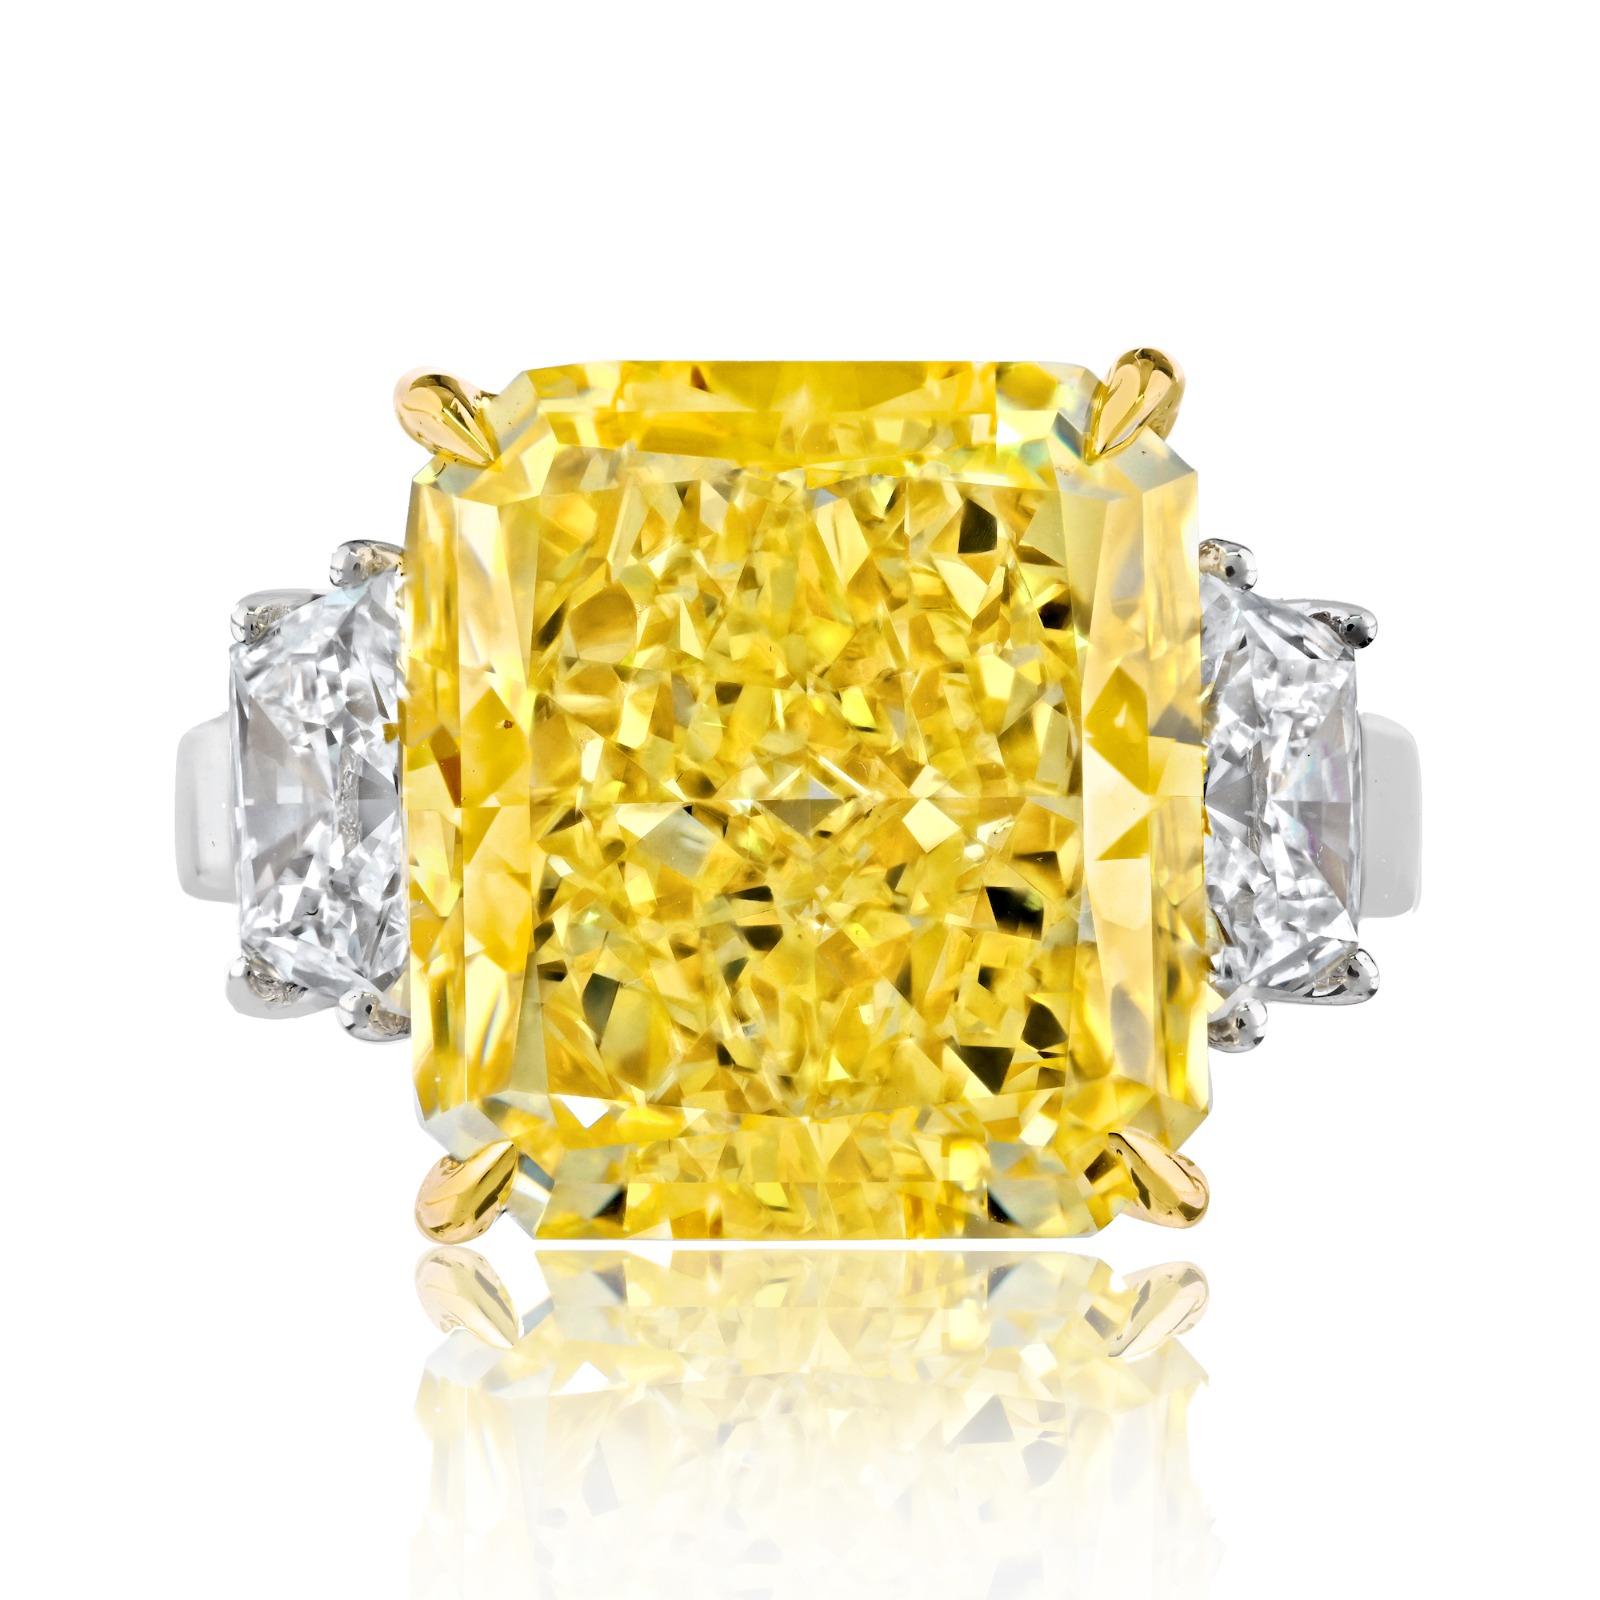 Cette bague en diamant est vraiment un bijou exceptionnel, mettant en vedette un diamant très spécial de couleur jaune vif Vivid Radiant Cut. Ce diamant, d'une taille remarquable de 12 carats, est d'une couleur jaune vif. 

La bague est montée en